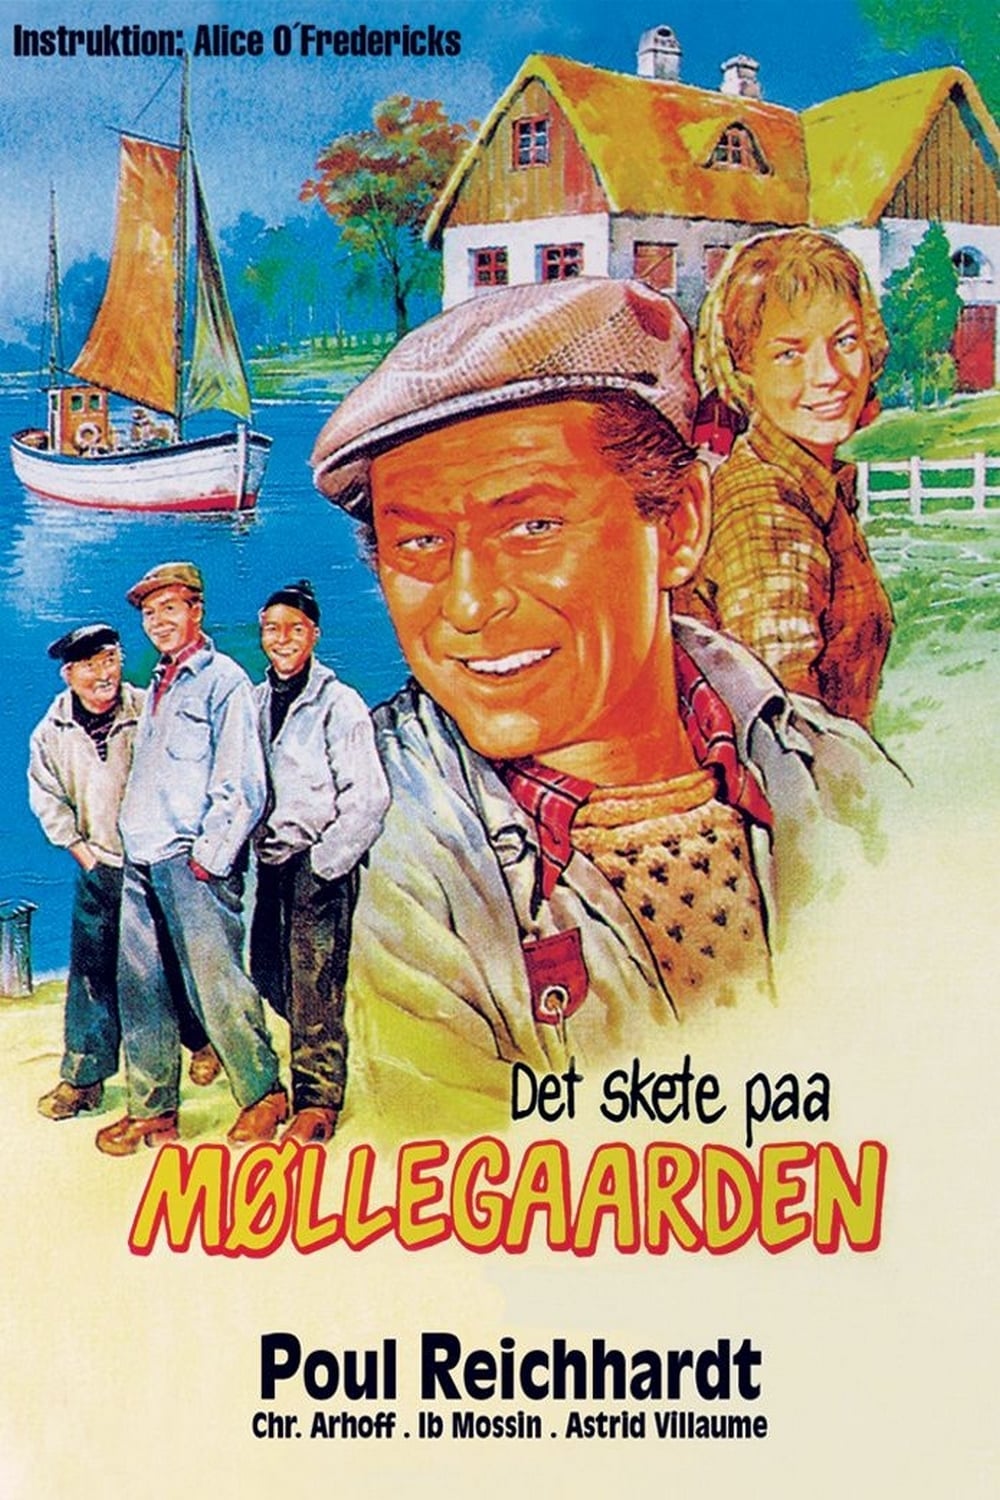 Det skete paa Møllegaarden (1960)